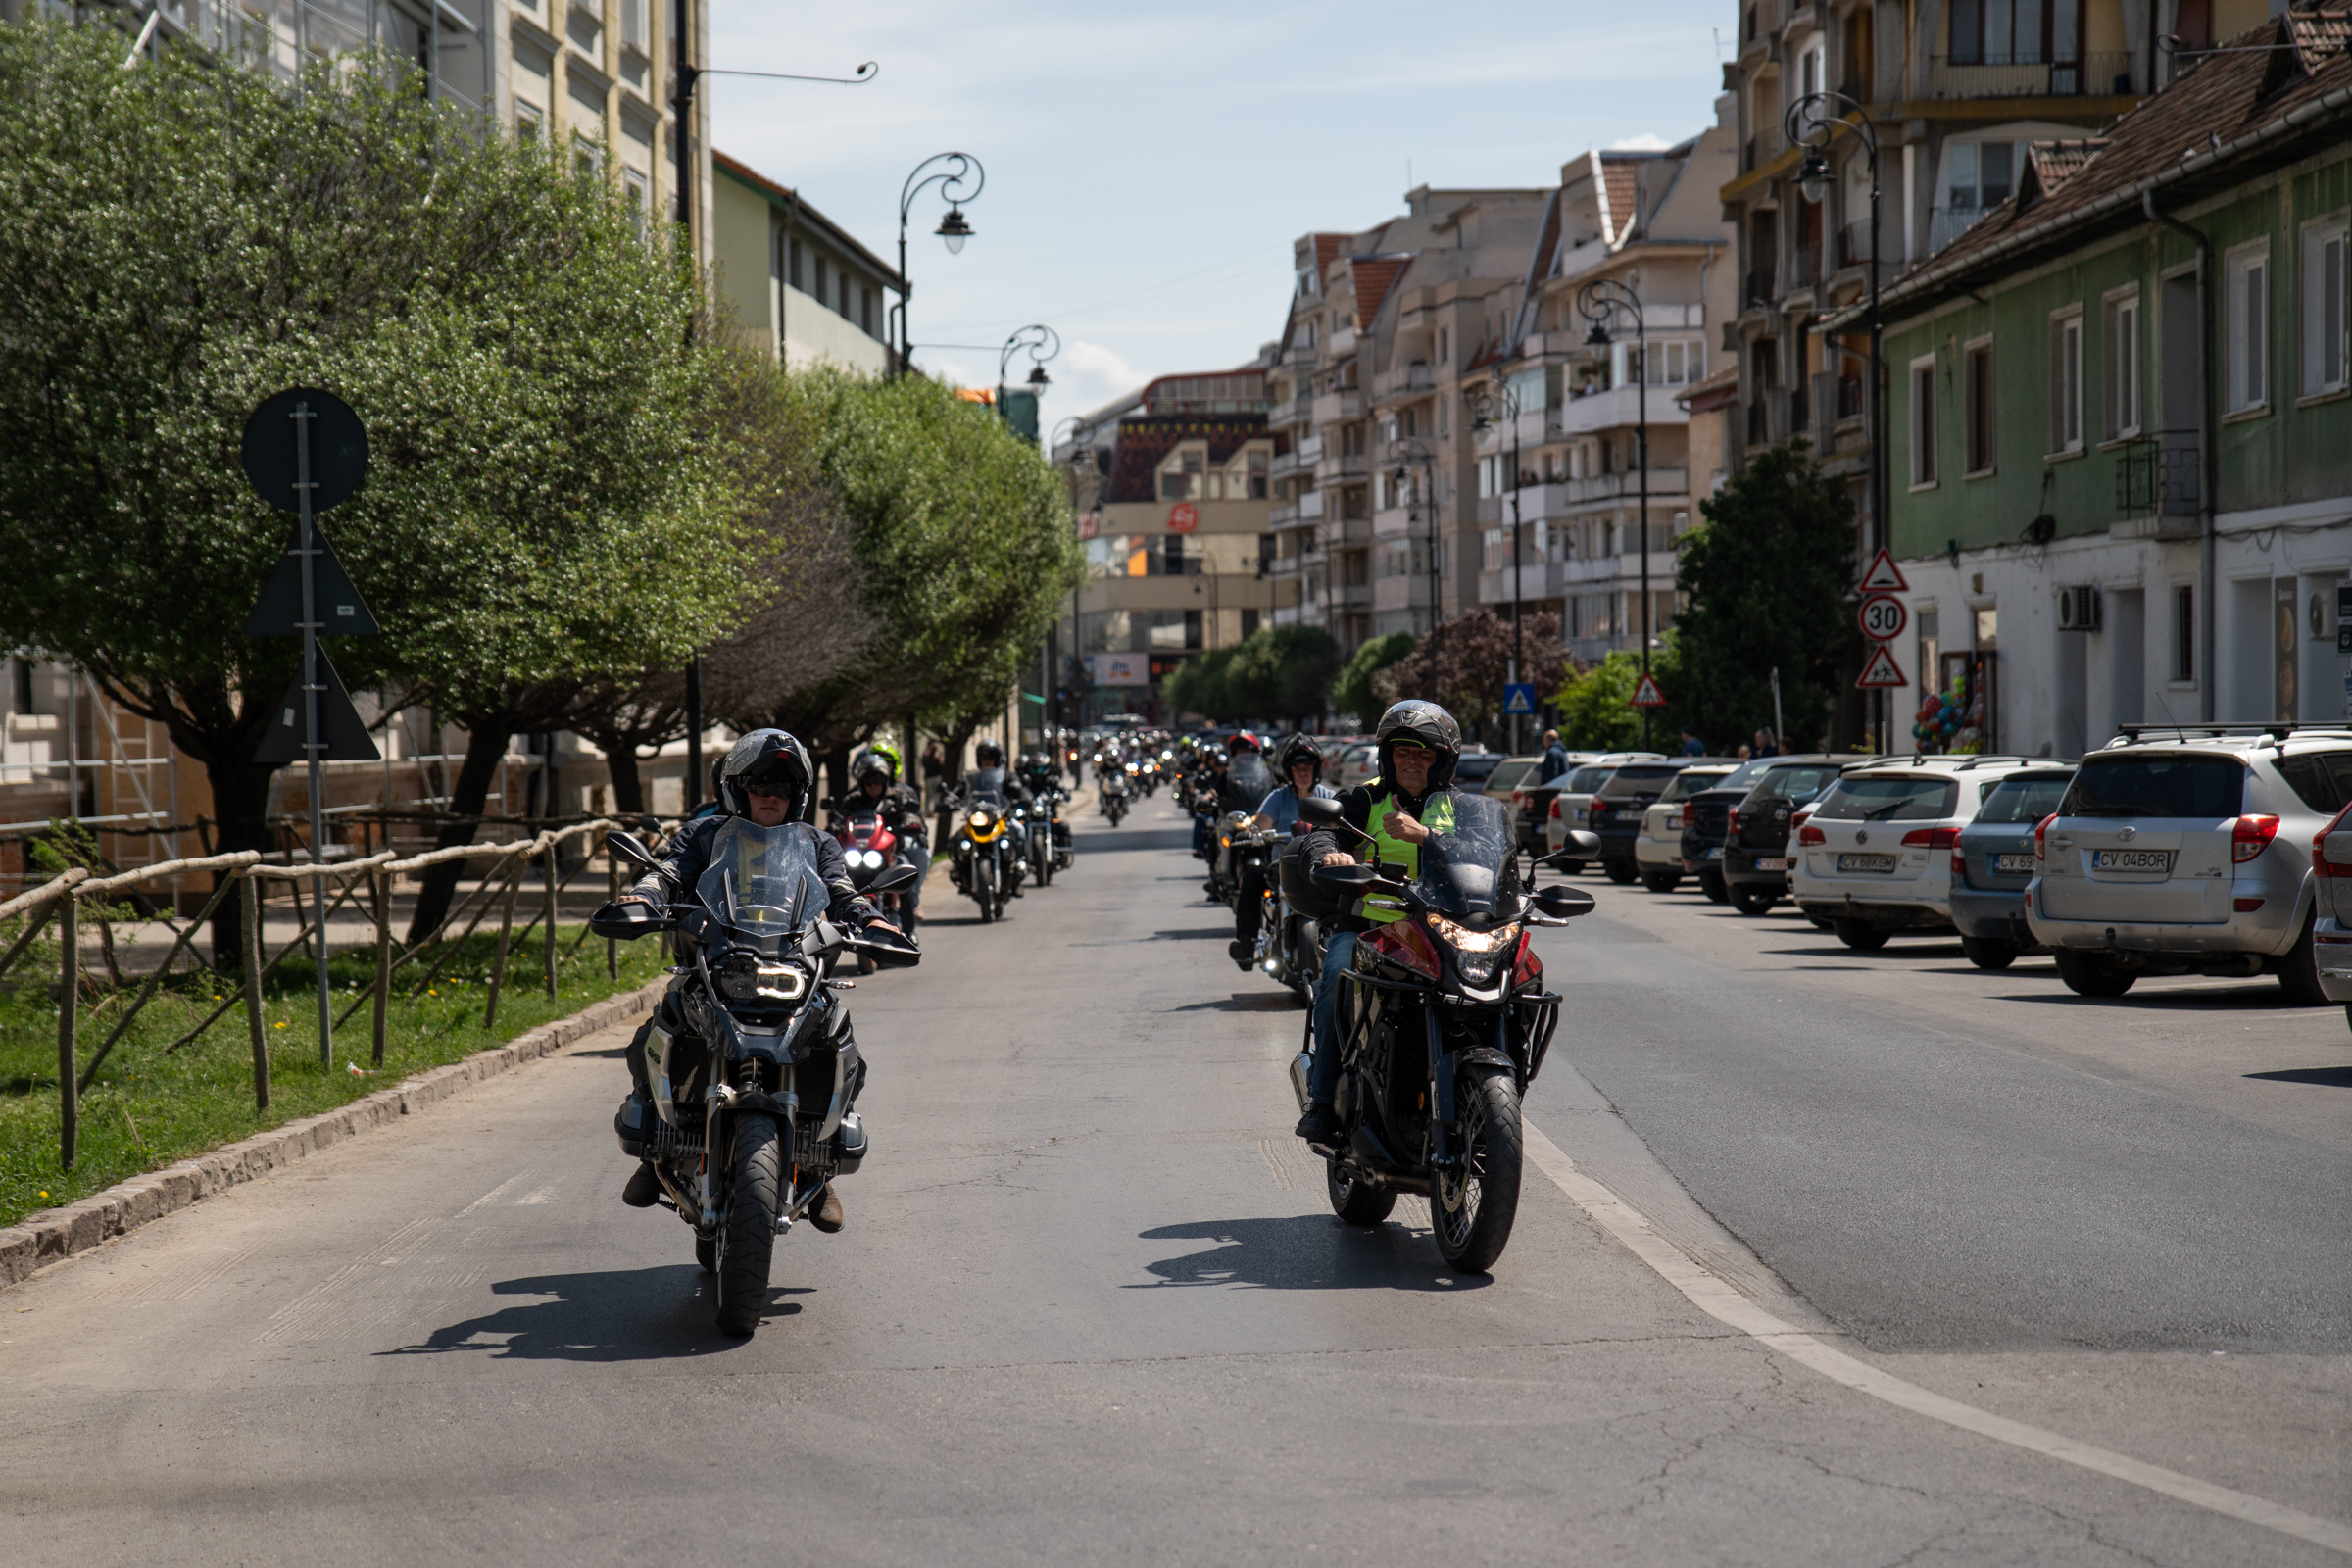 Háromszéki motorosok százai hívták fel a figyelmet a biztonságos közlekedésre